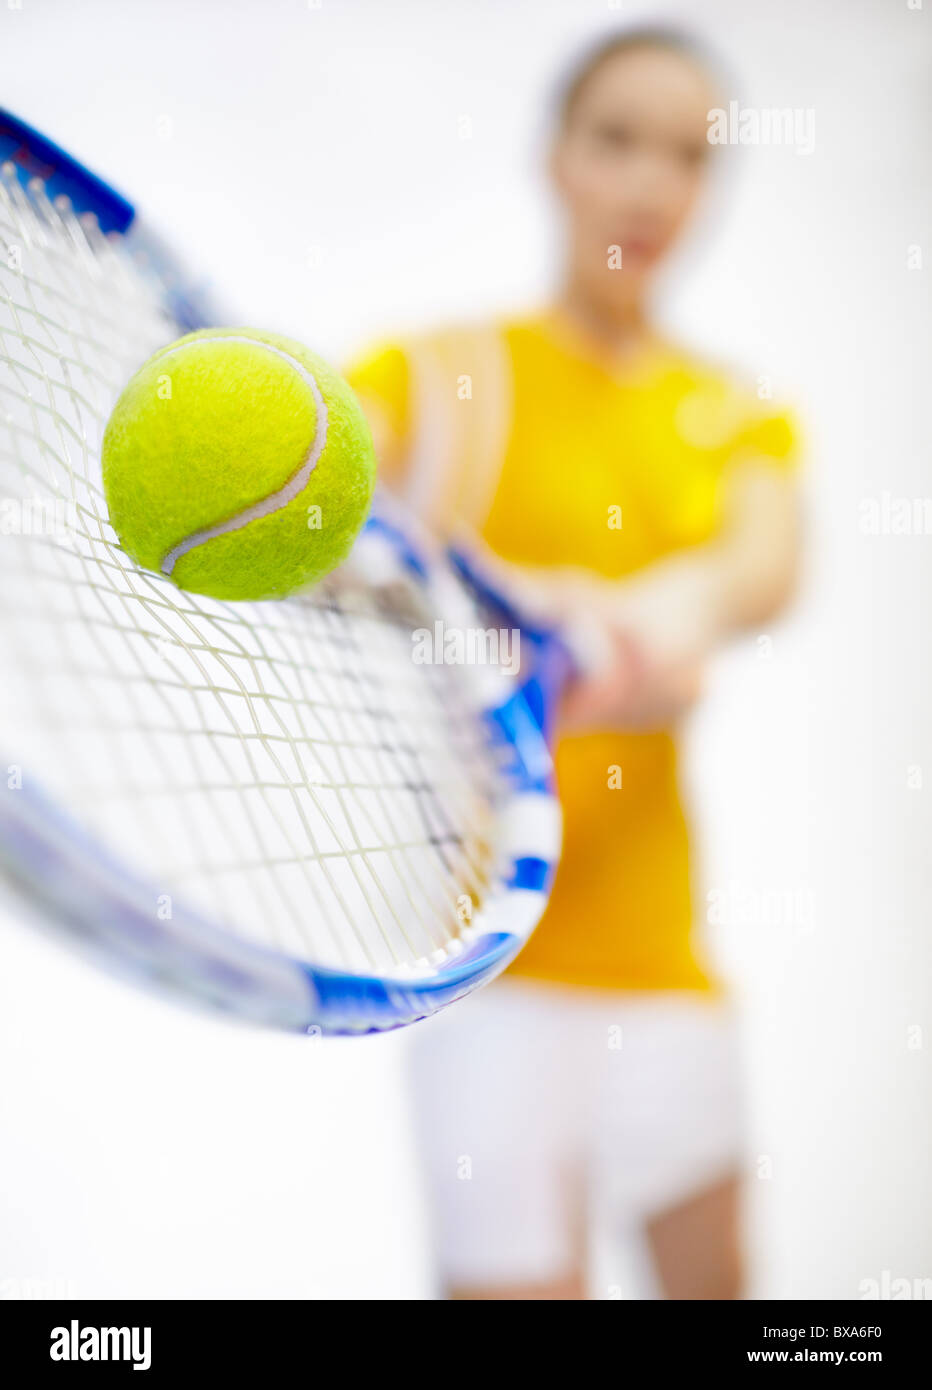 Torneo di tennis - player donna con la racchetta e la palla bassa-focus shot con focus sulla palla da tennis Foto Stock